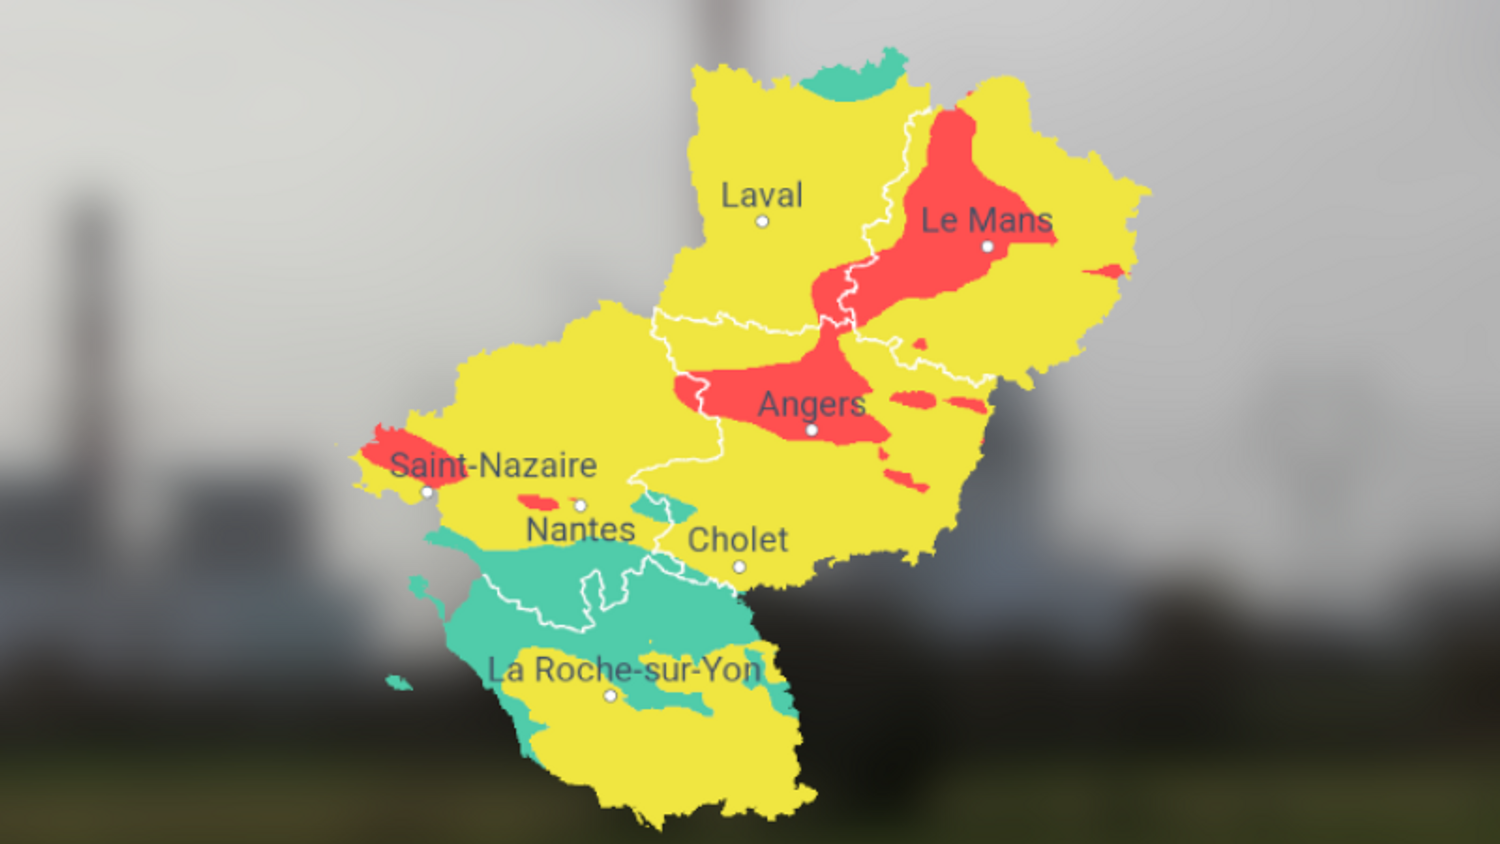 Qualité de l'air dégradée ce vendredi en Bretagne et Pays de la Loire